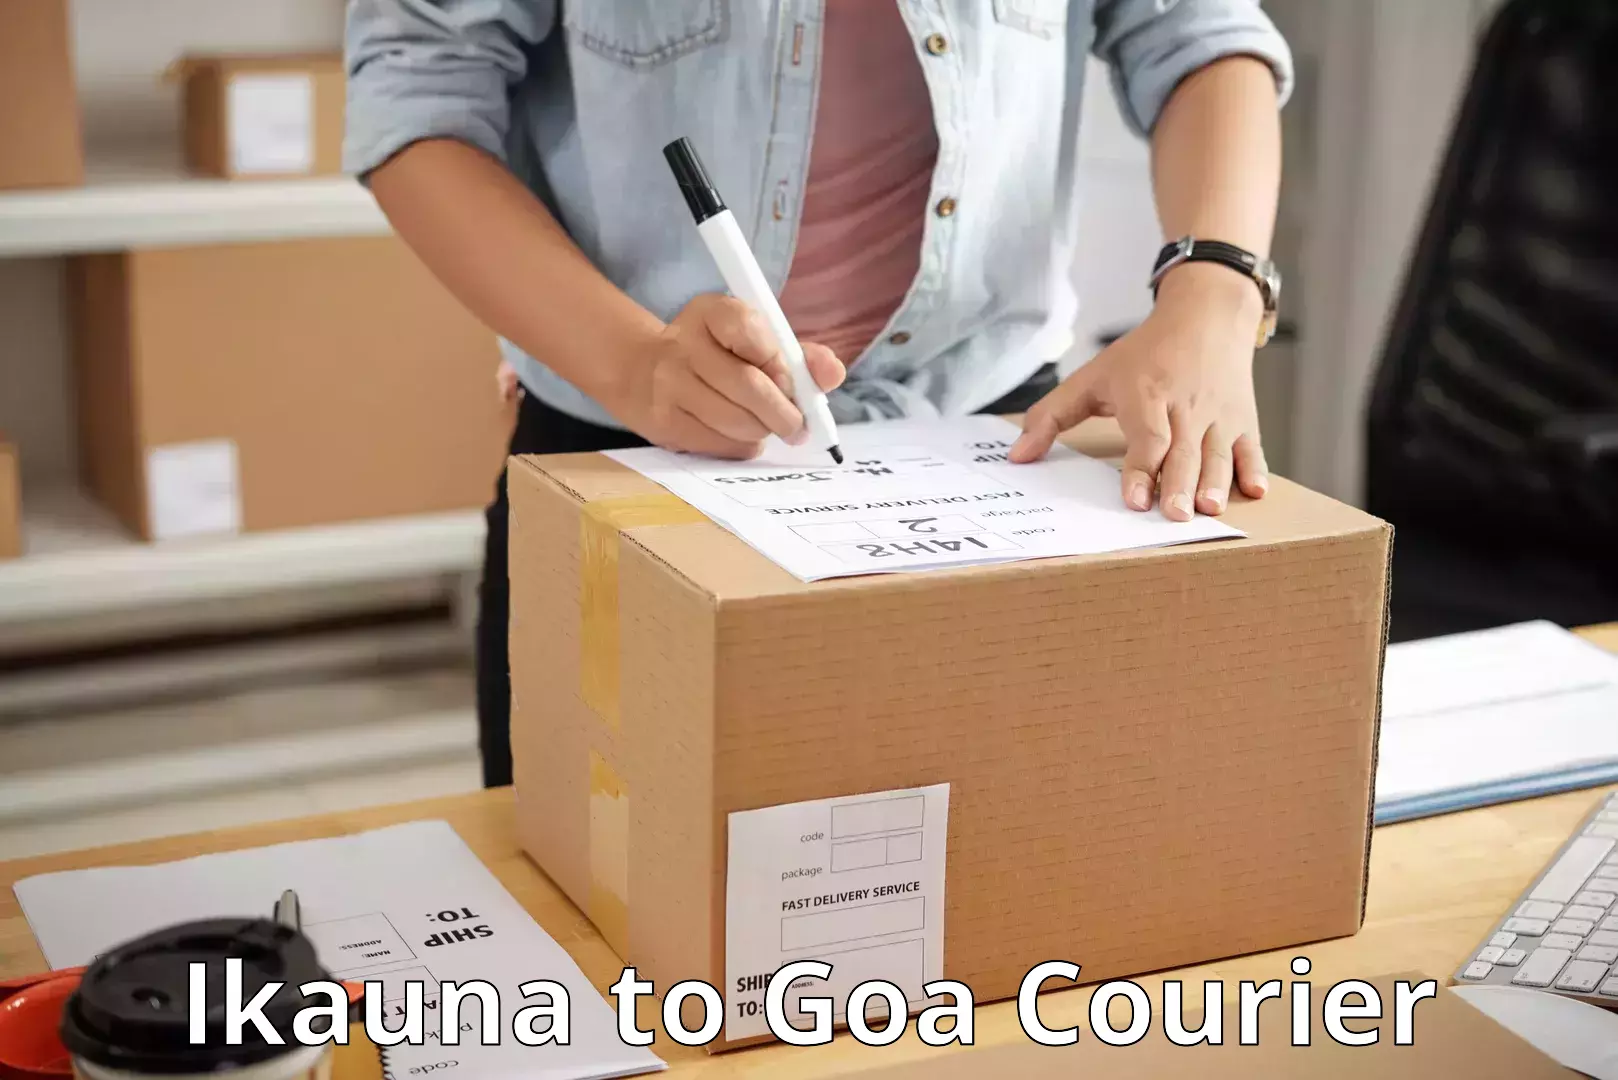 On-call courier service Ikauna to Goa